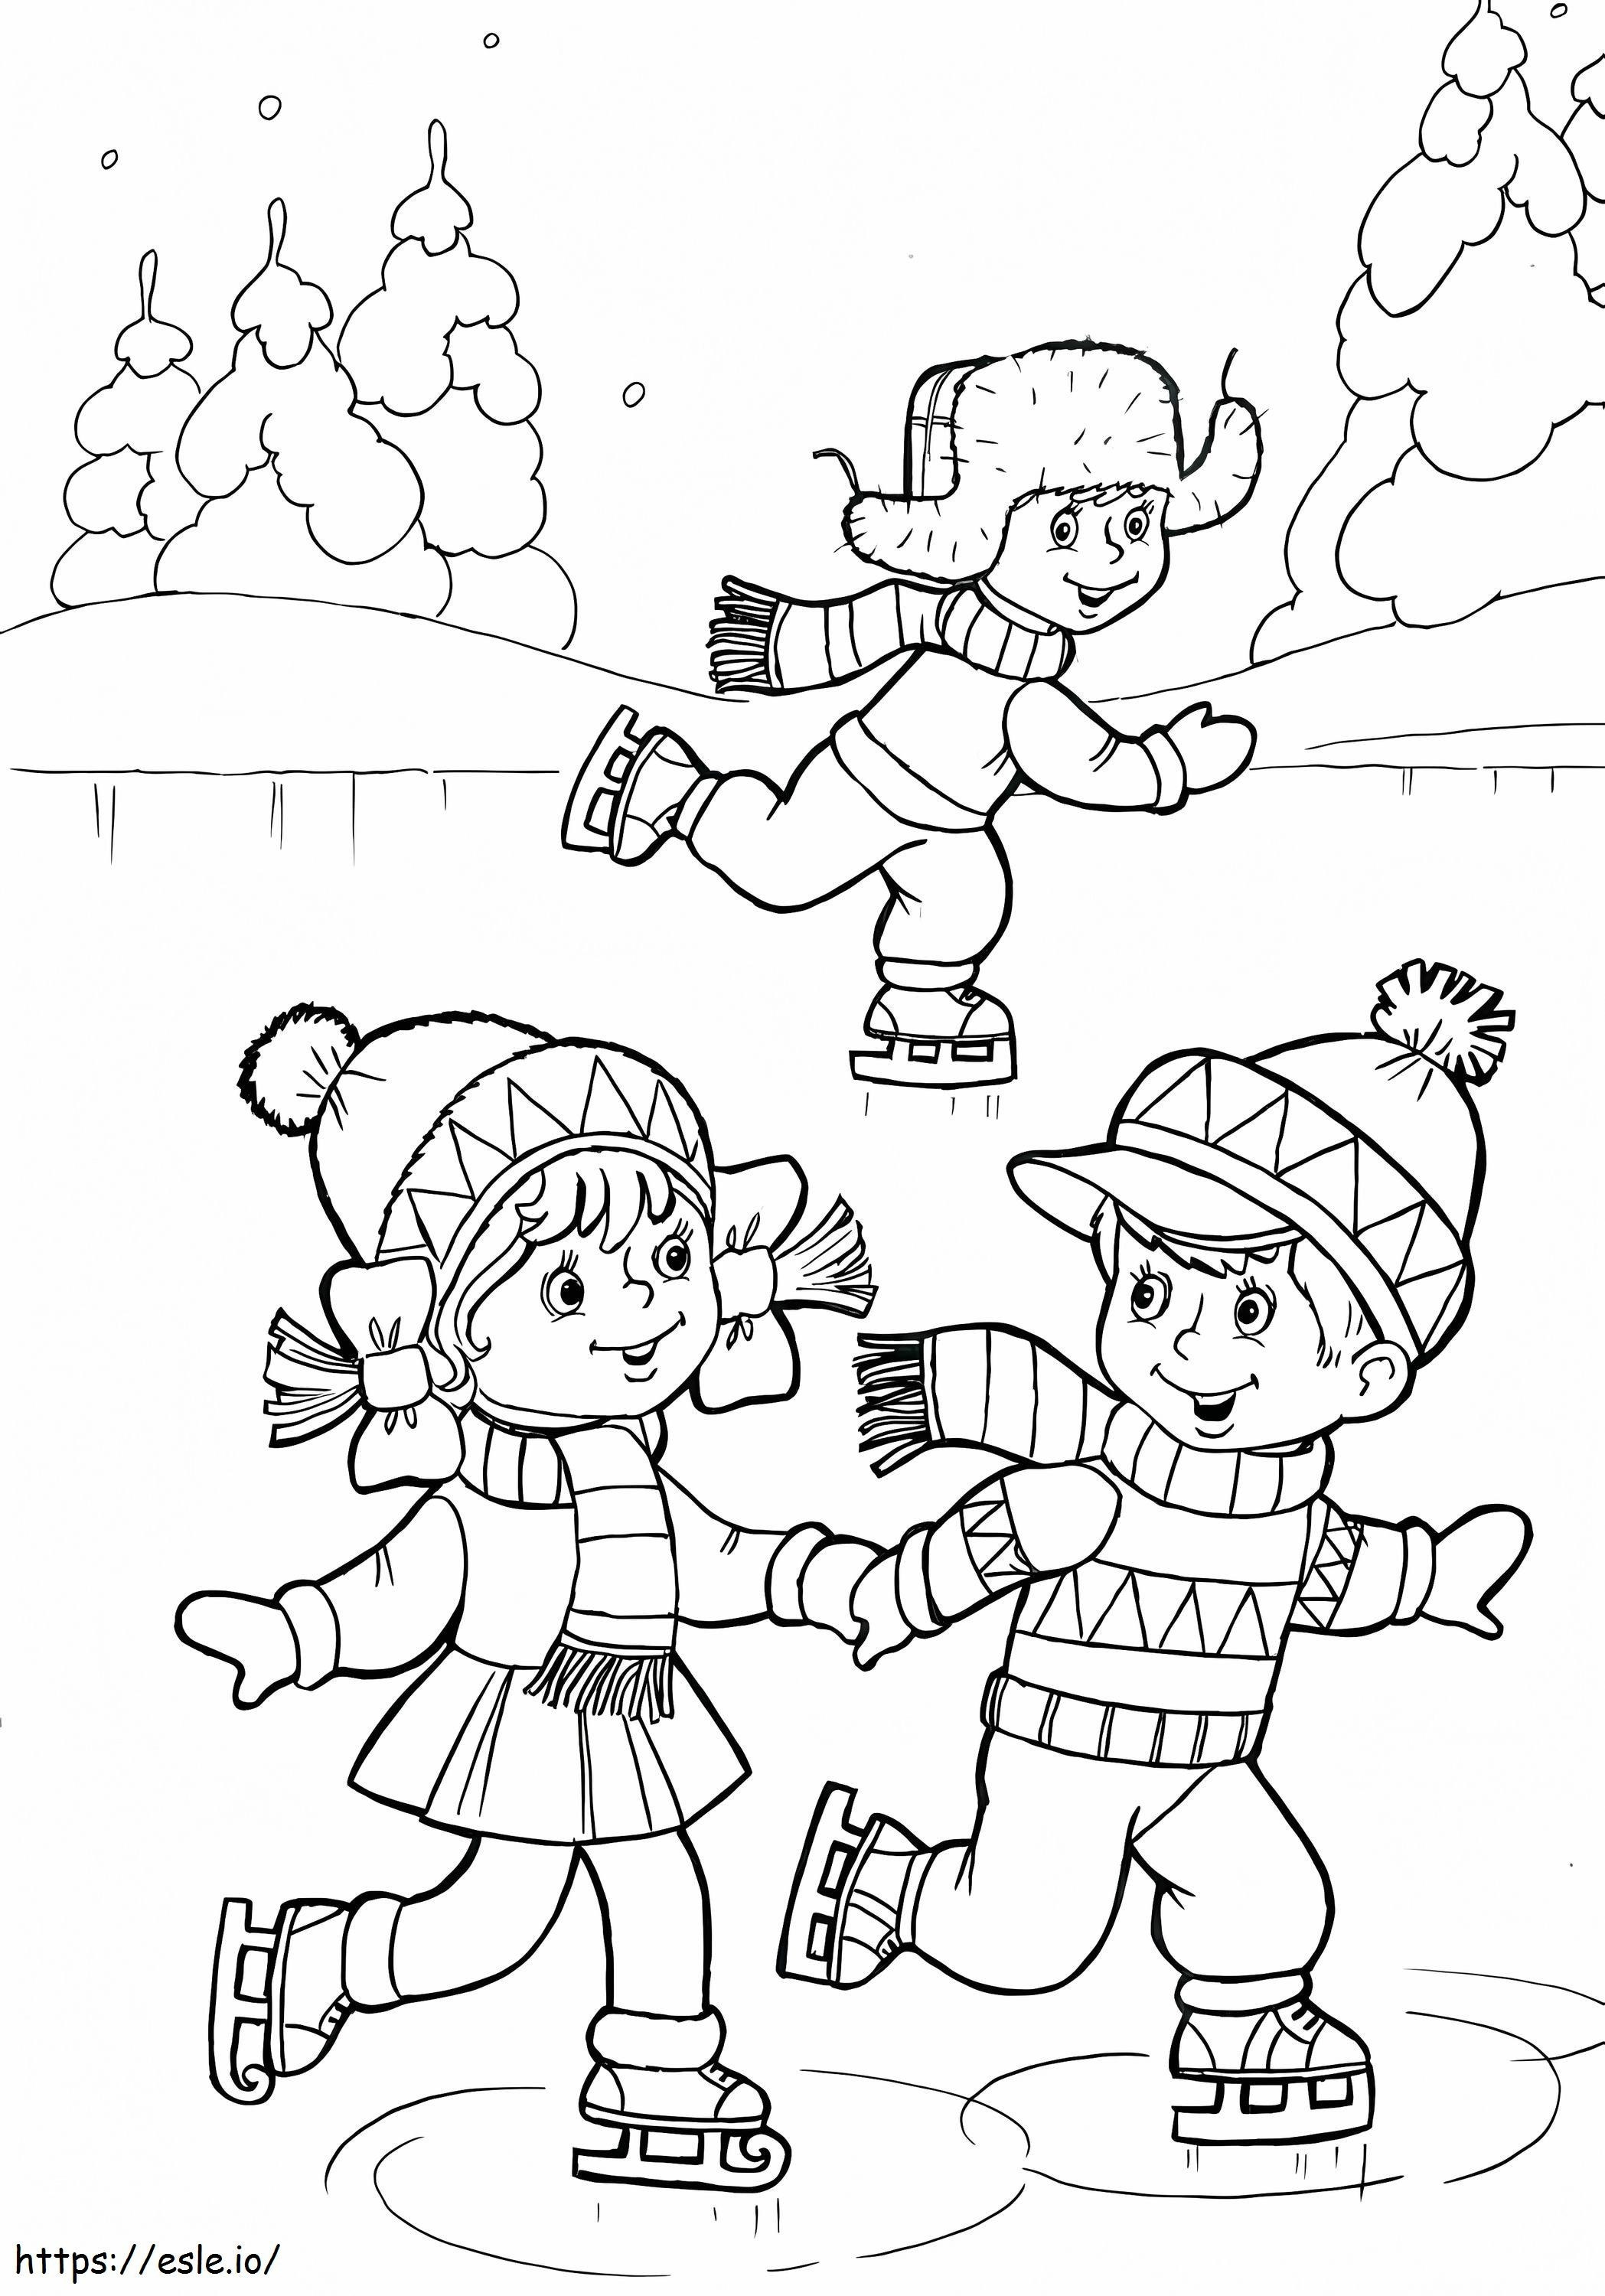 Drei Kinder spielen Eislaufen ausmalbilder